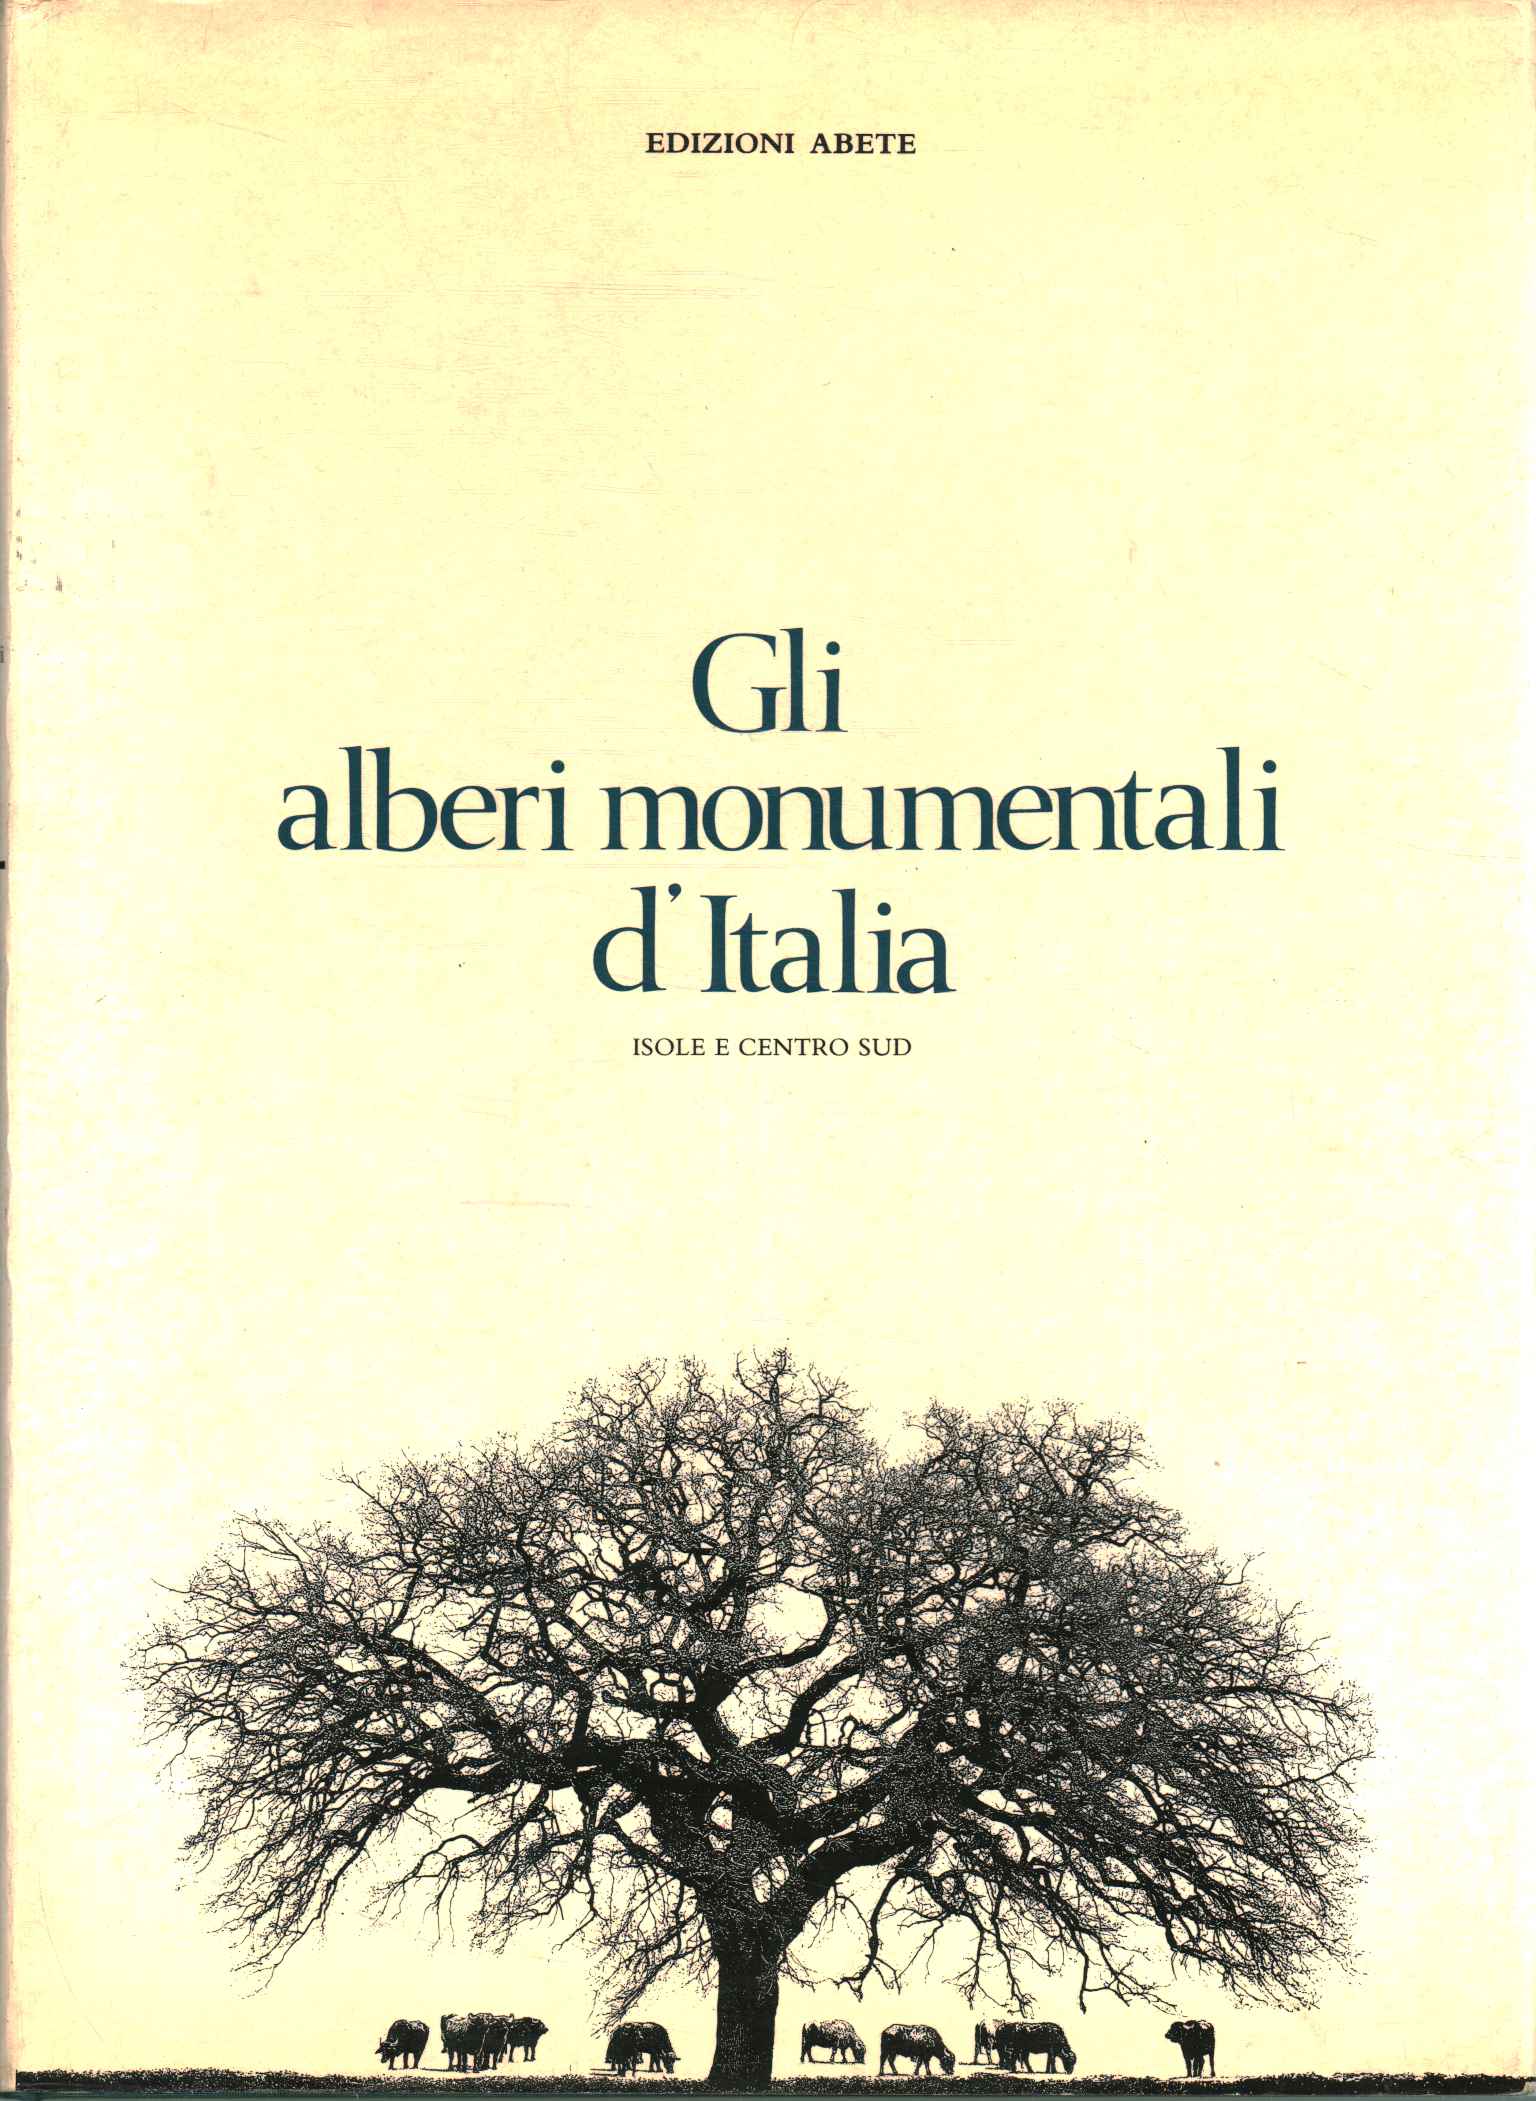 Los árboles monumentales de Italia%2,Los árboles monumentales de Italia%2,Los árboles monumentales de Italia%2